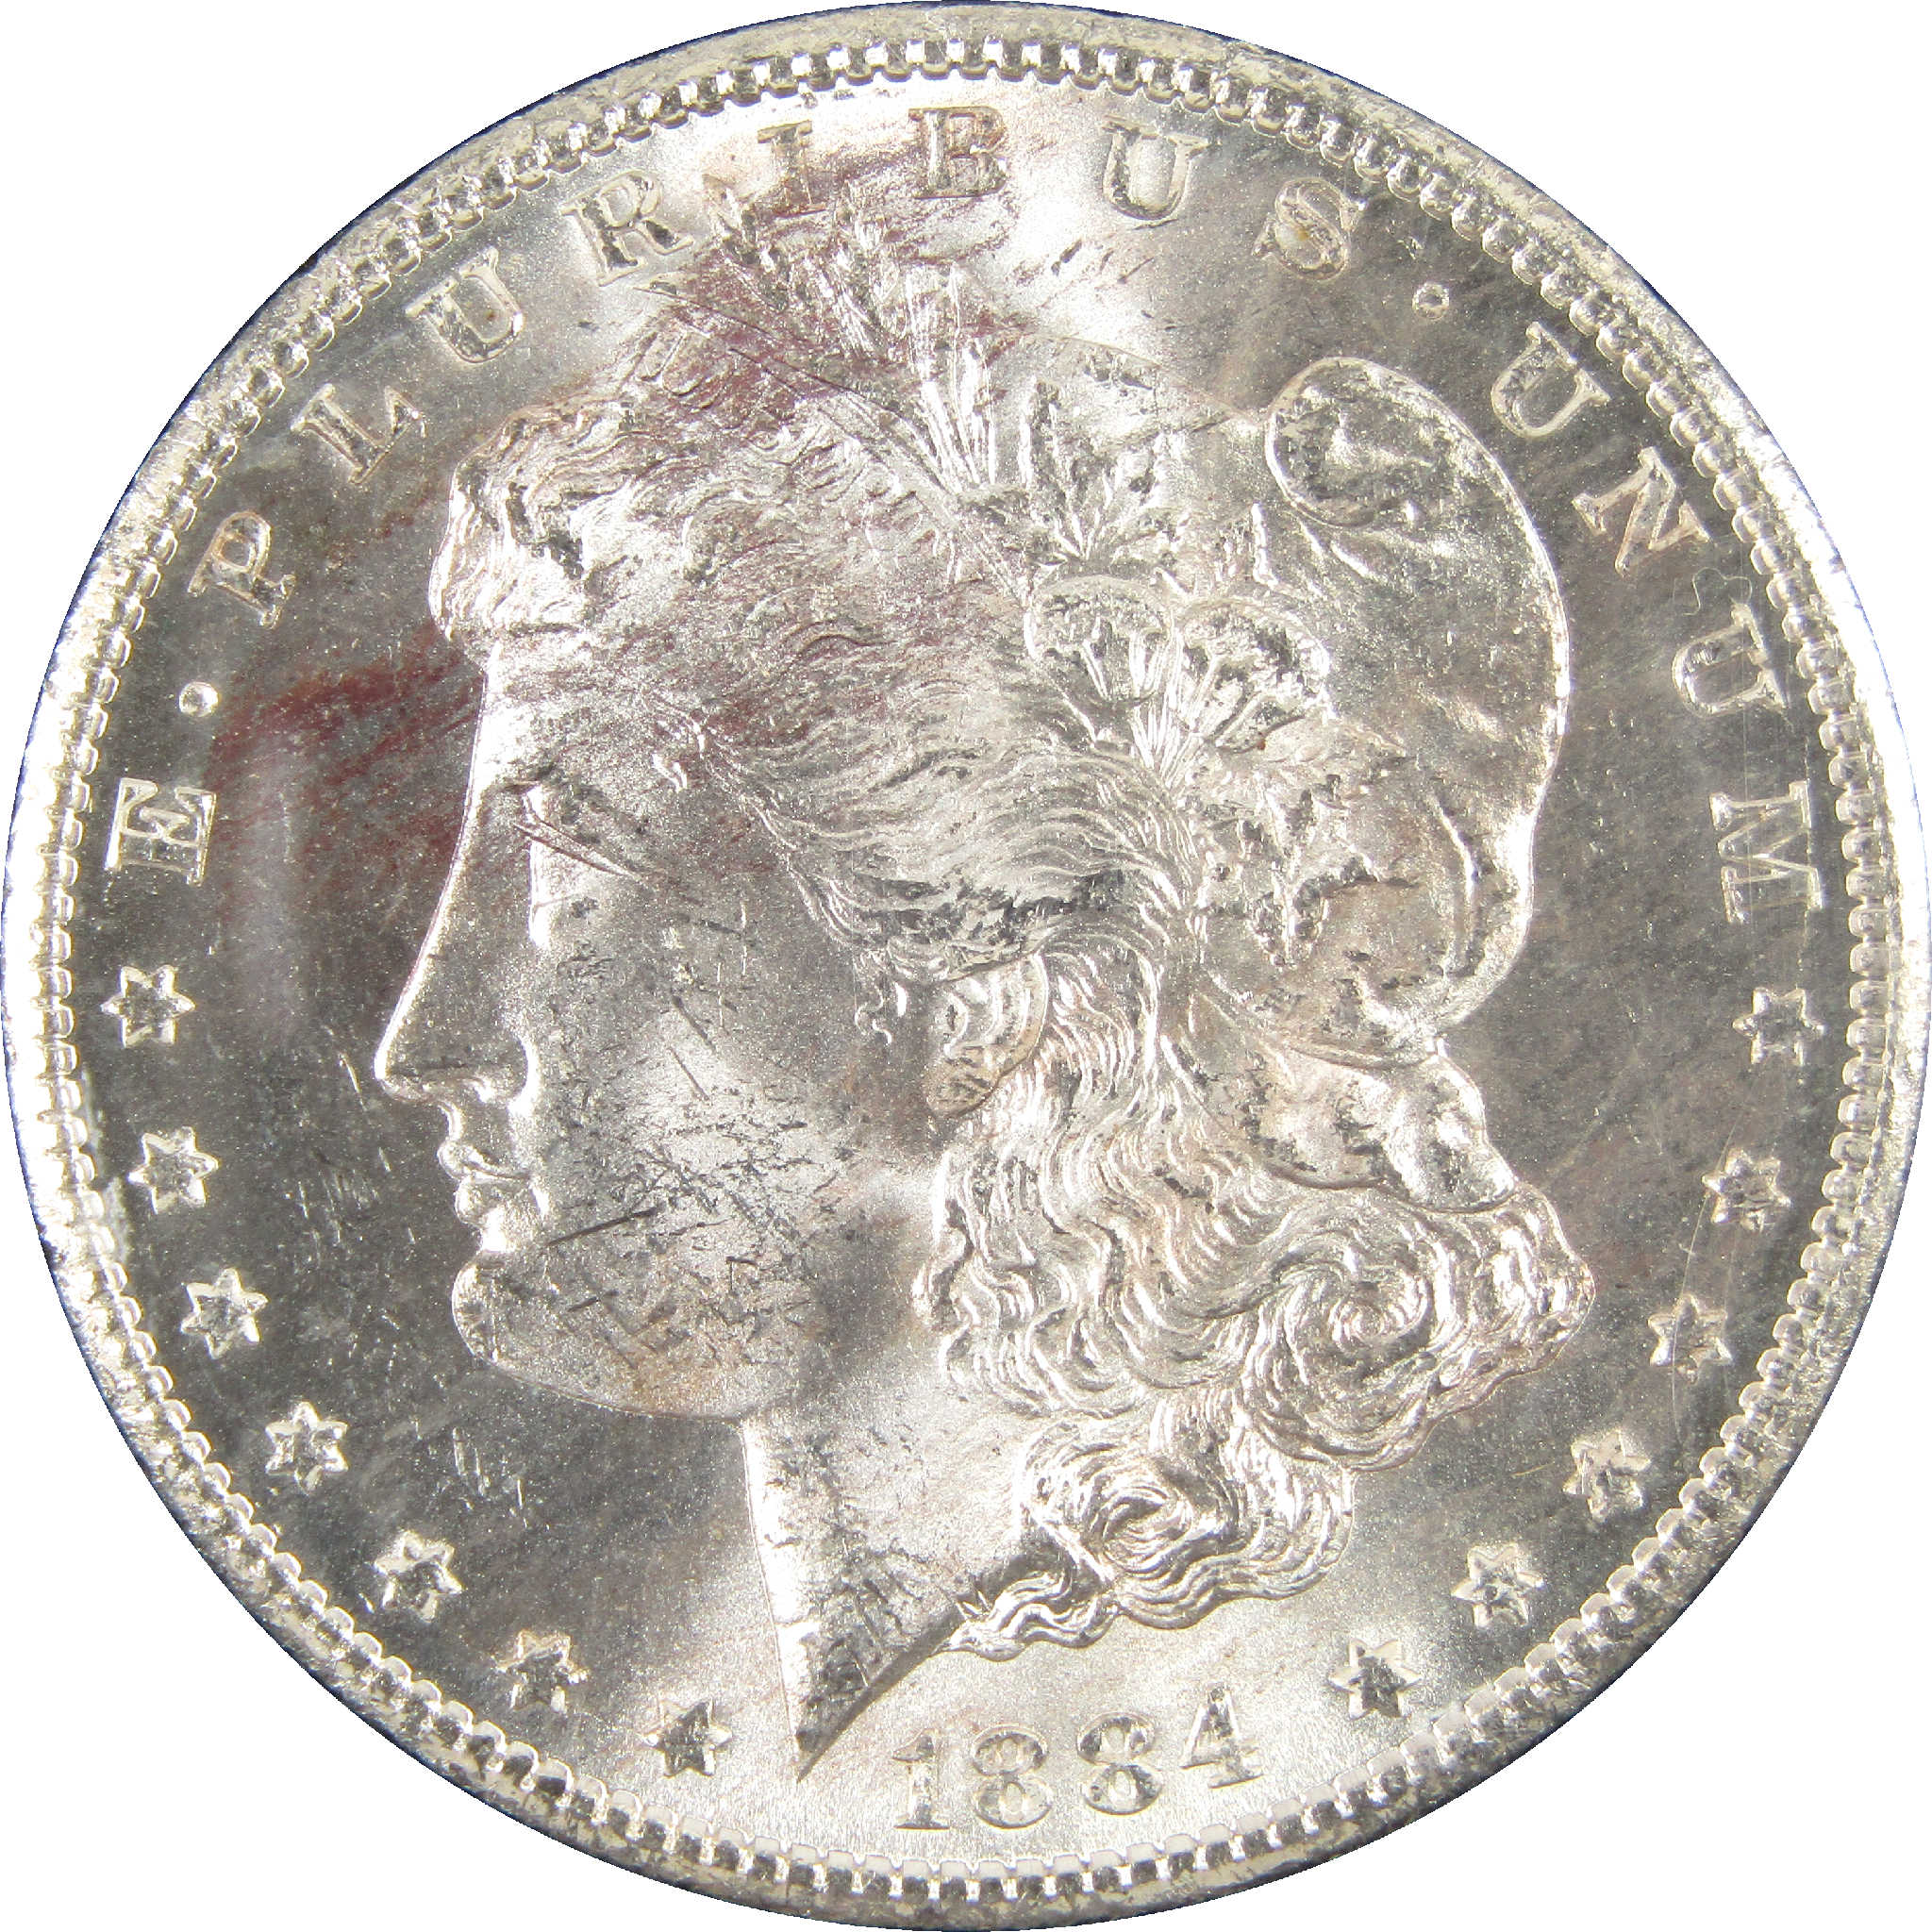 1884 CC GSA Morgan Dollar Uncirculated Silver $1 Coin SKU:CPC6253 - Morgan coin - Morgan silver dollar - Morgan silver dollar for sale - Profile Coins &amp; Collectibles